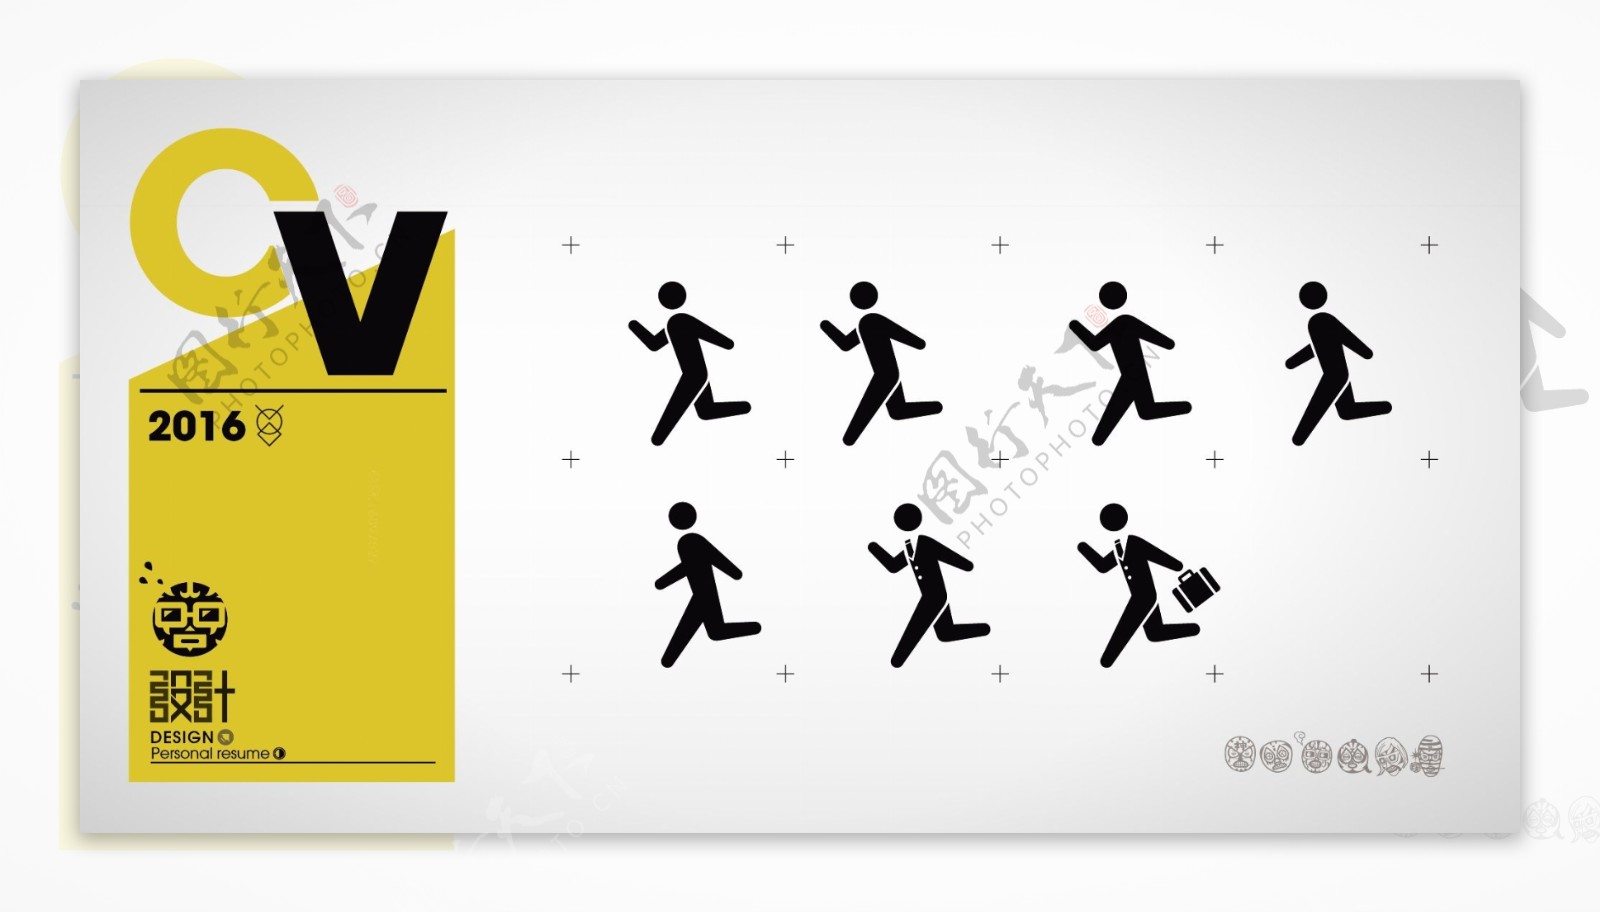 奔跑剪影男人公共标识图标设计